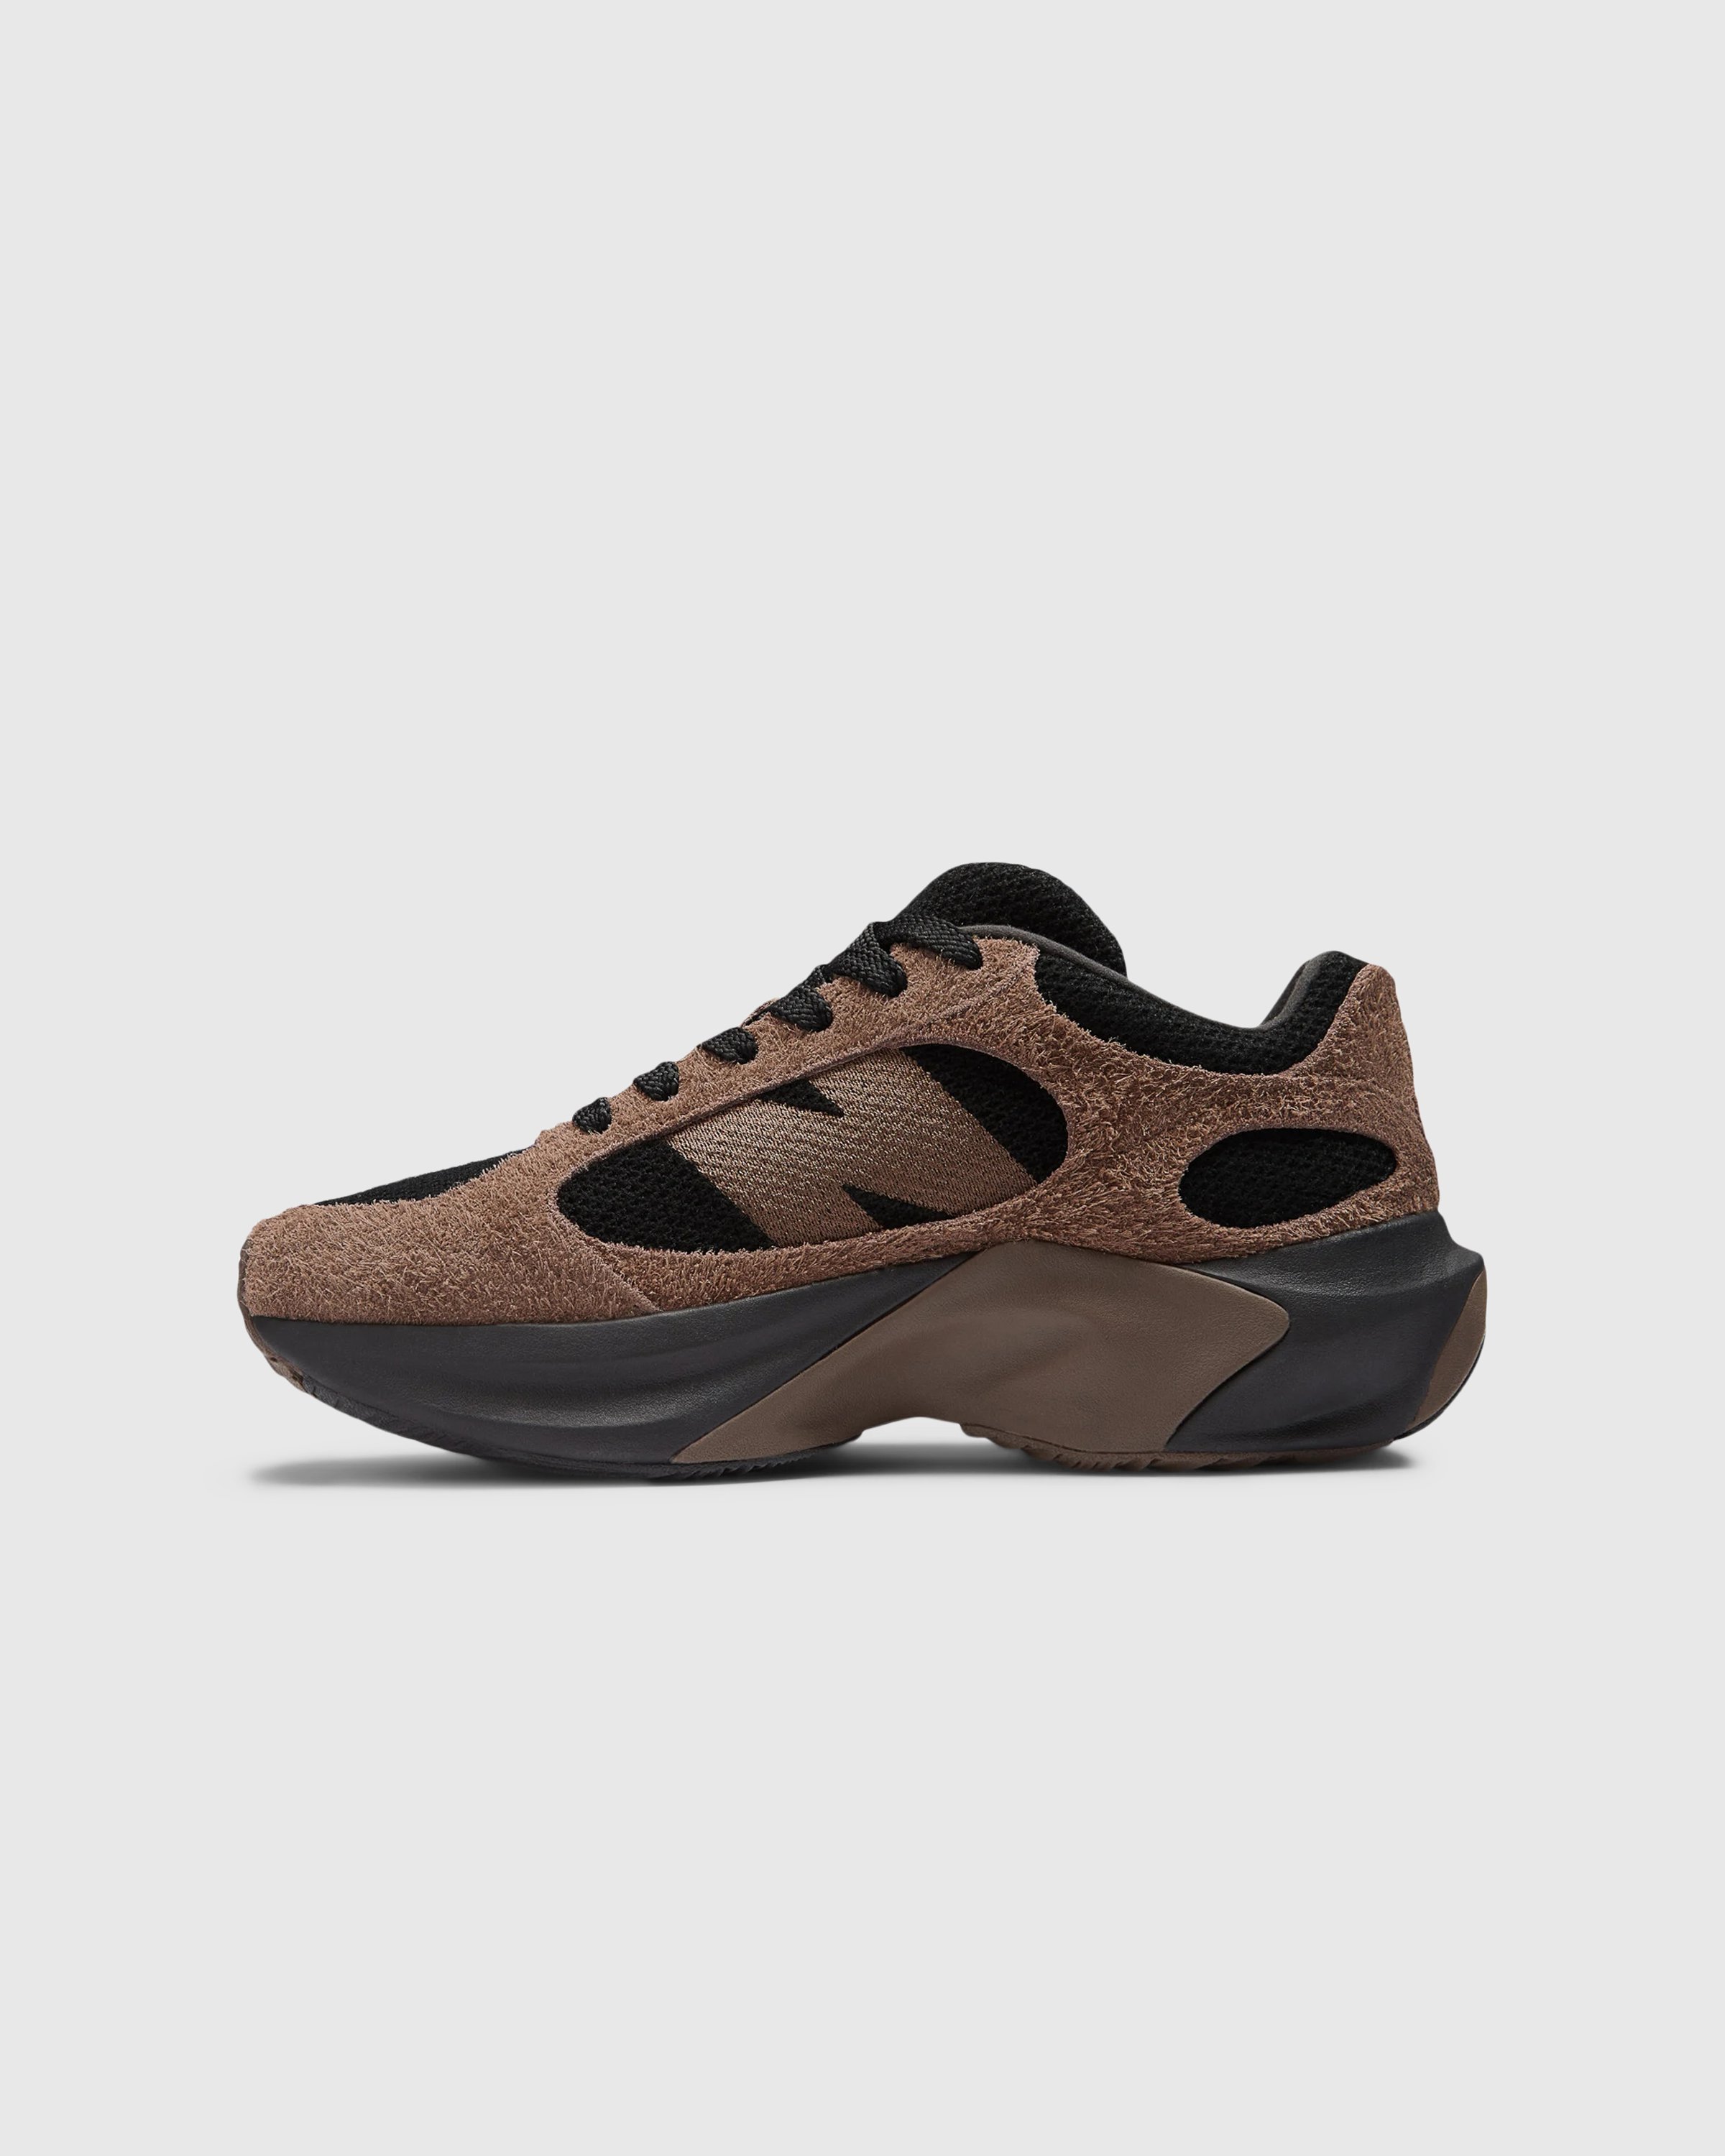 New Balance - WRPD Runner Dark Mushroom - Footwear - Brown - Image 2